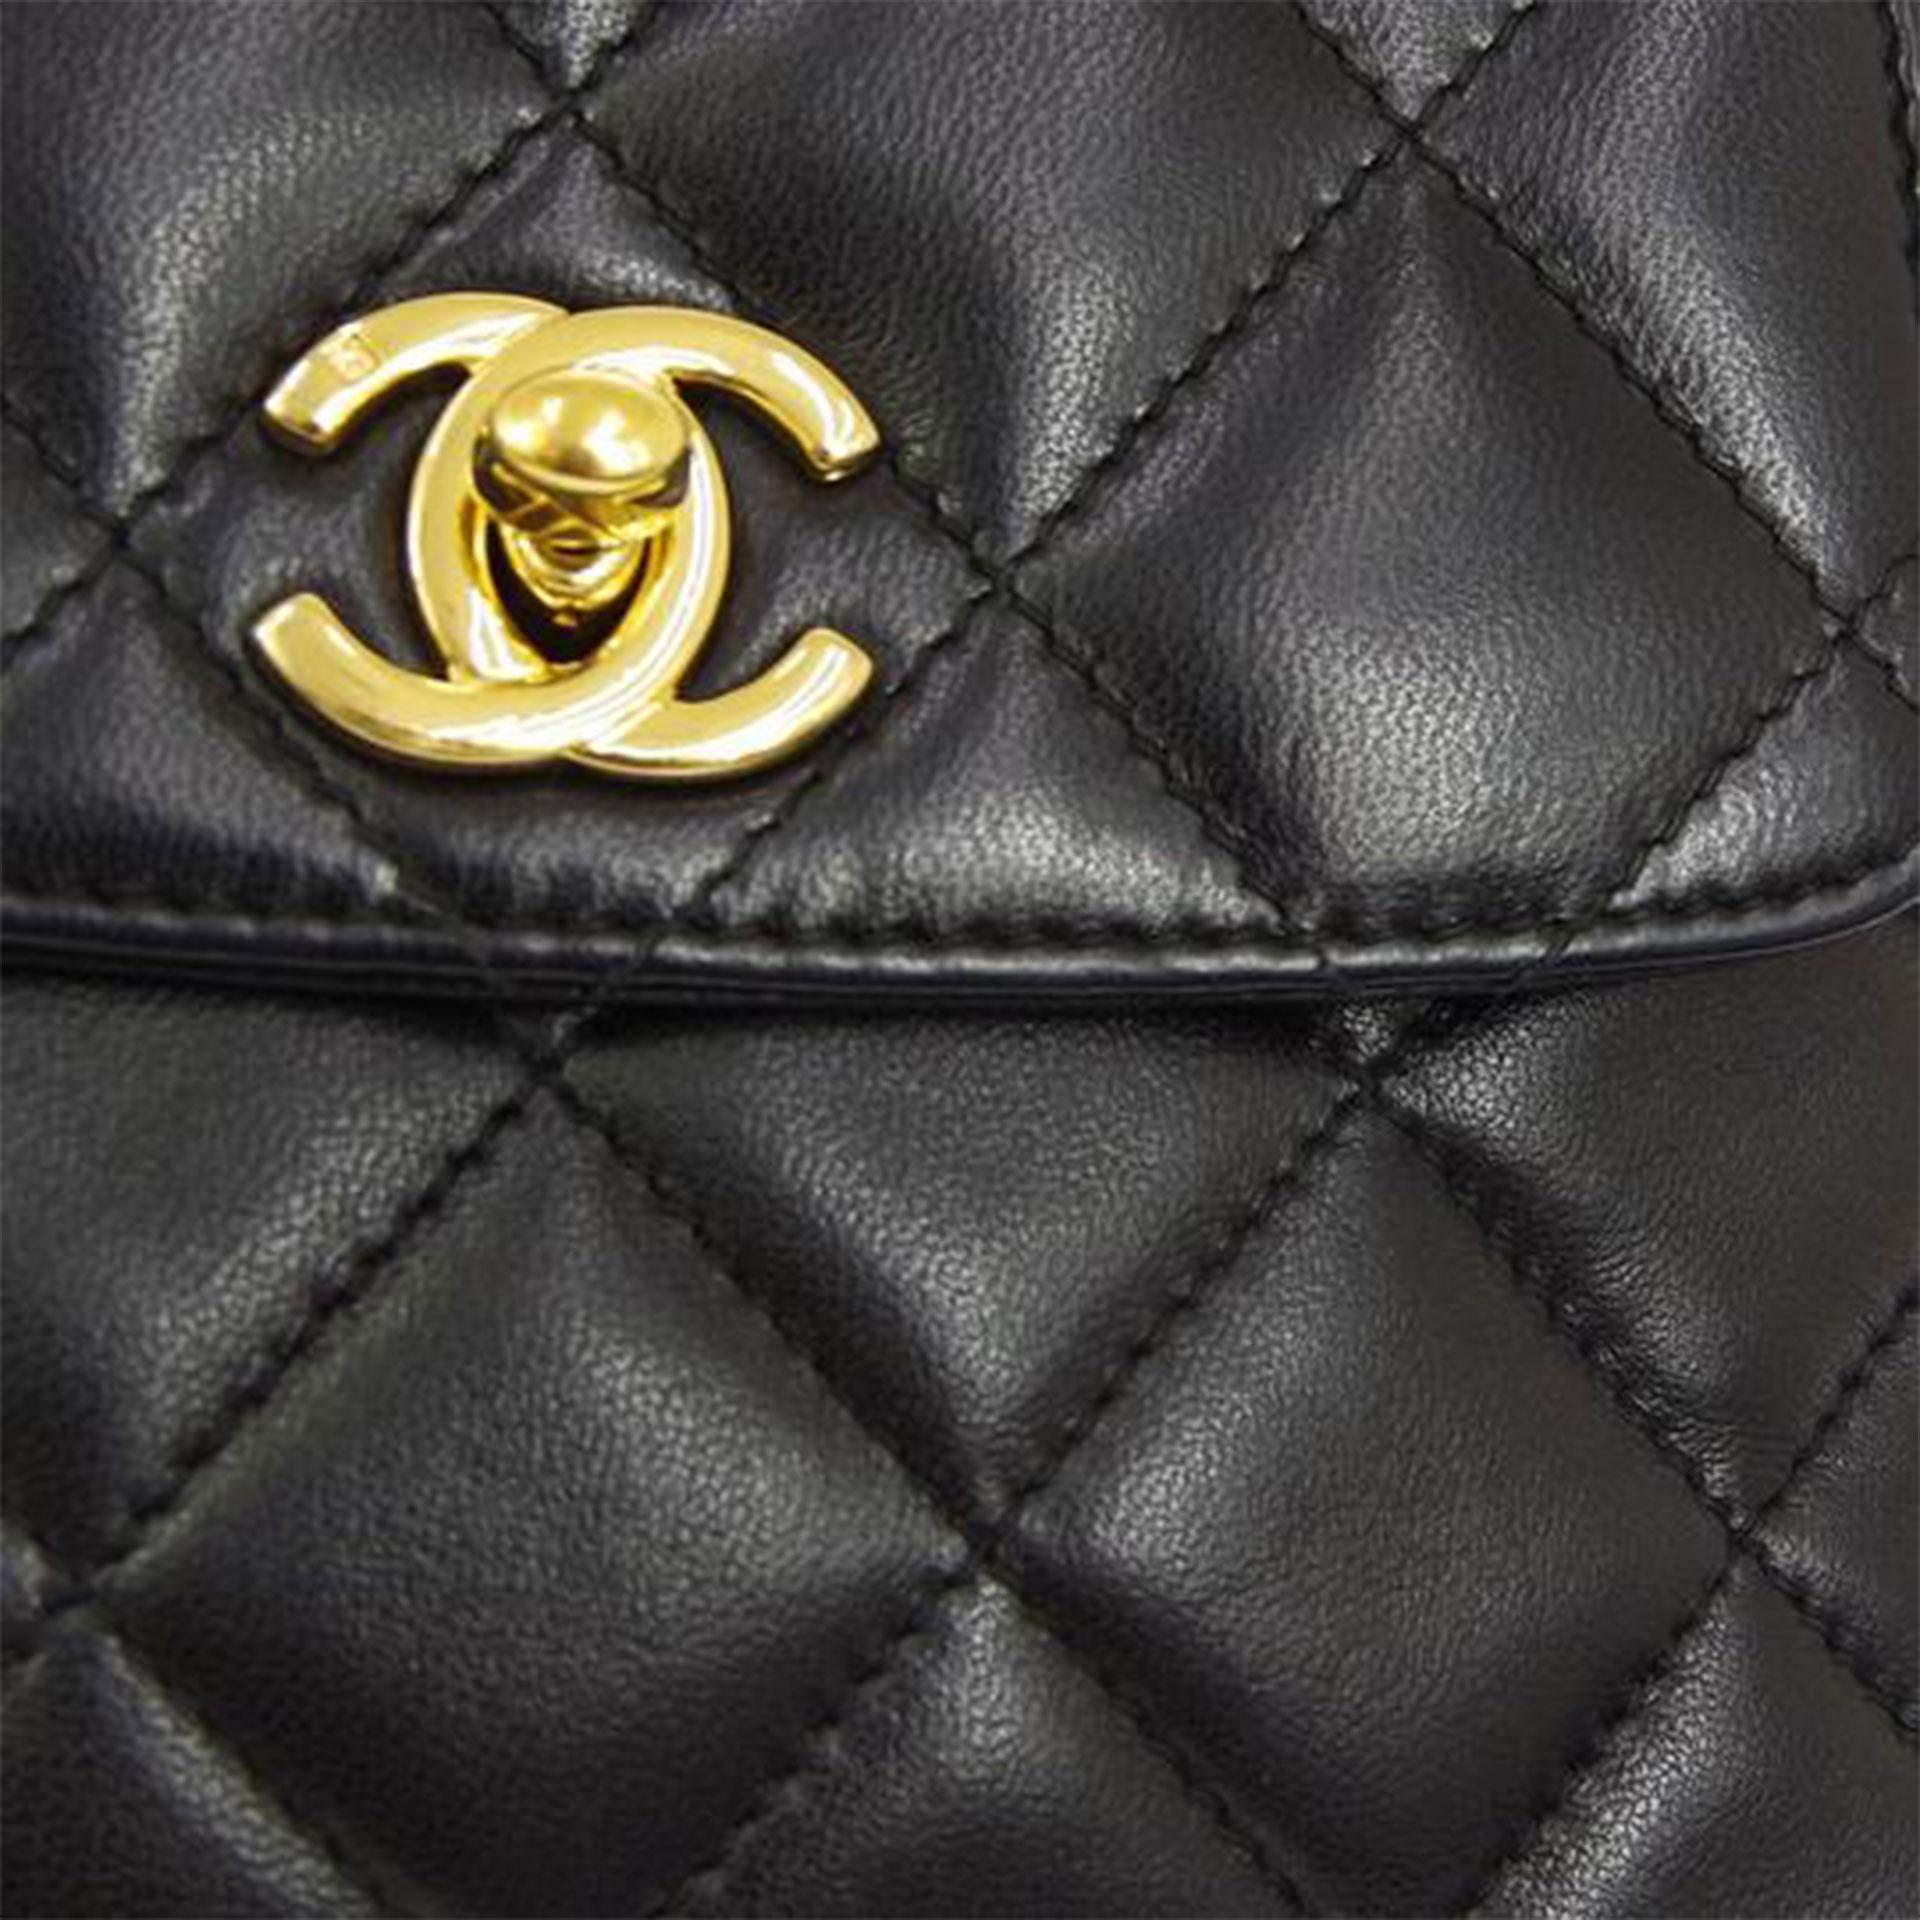 Chanel Rare Vintage Mini 1997 Fanny Pack Waist Belt Bum Bag Pouch

1997 {VINTAGE 25 ans}
Quincaillerie en or
Fermeture à rabat CC Turnlock
Ceinture classique en chaîne entrelacée avec languette dorée au logo 